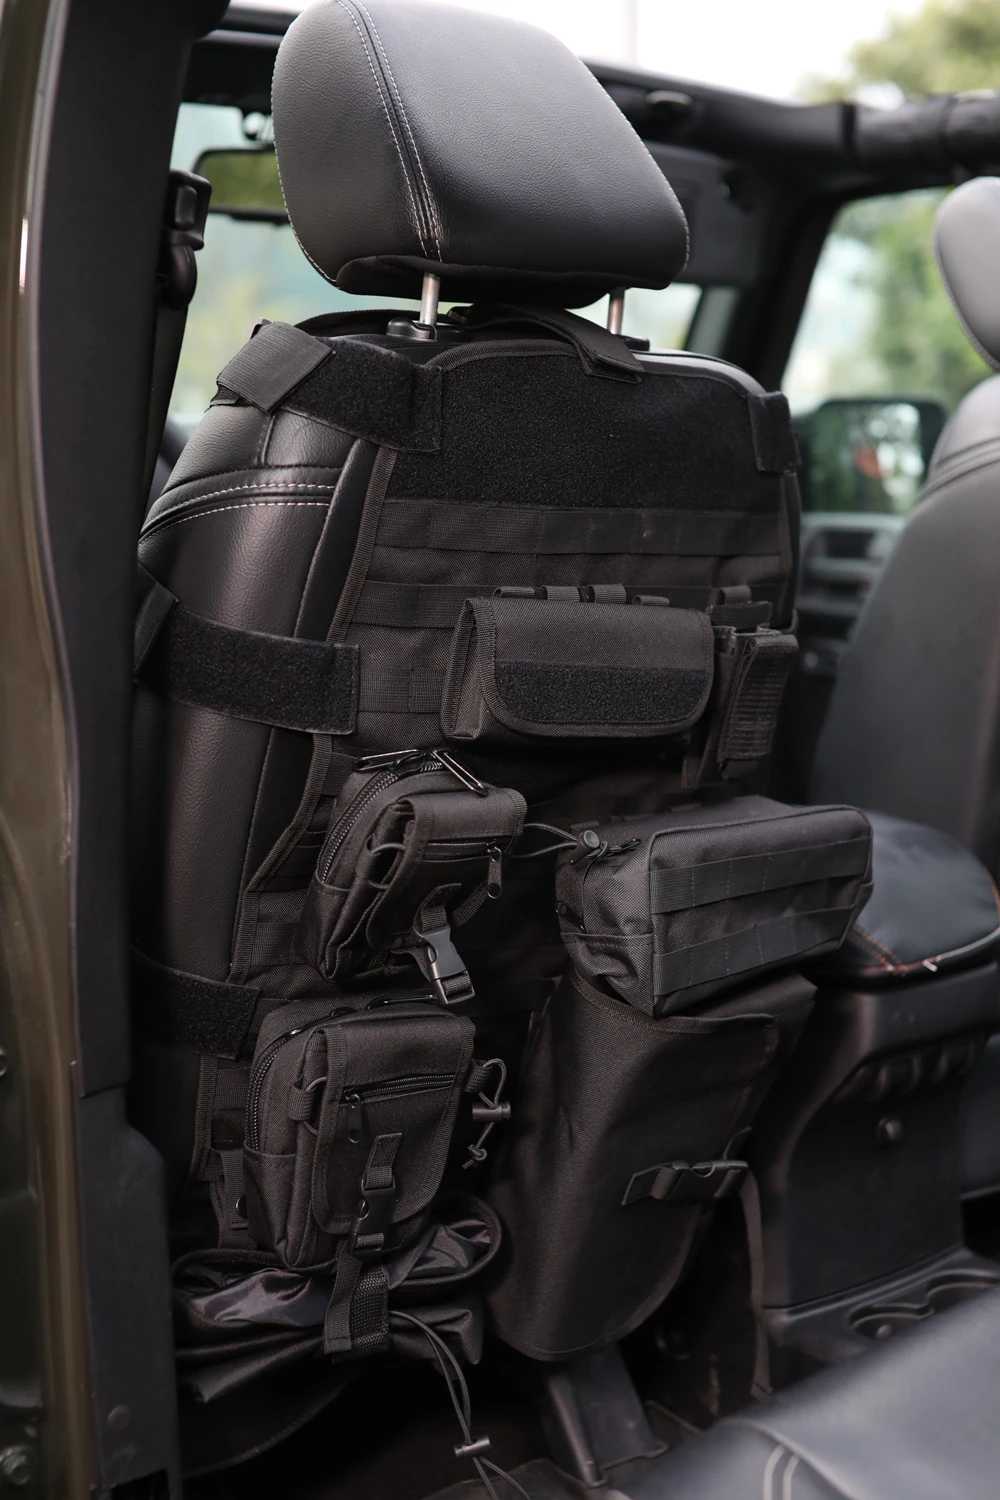 Интерьер автомобиля переднего сиденья комплект сзади сумка для хранения для Jeep Wrangler JK 2007- Мульти Карманы Tool Kit беспорядок держатель# CEK063